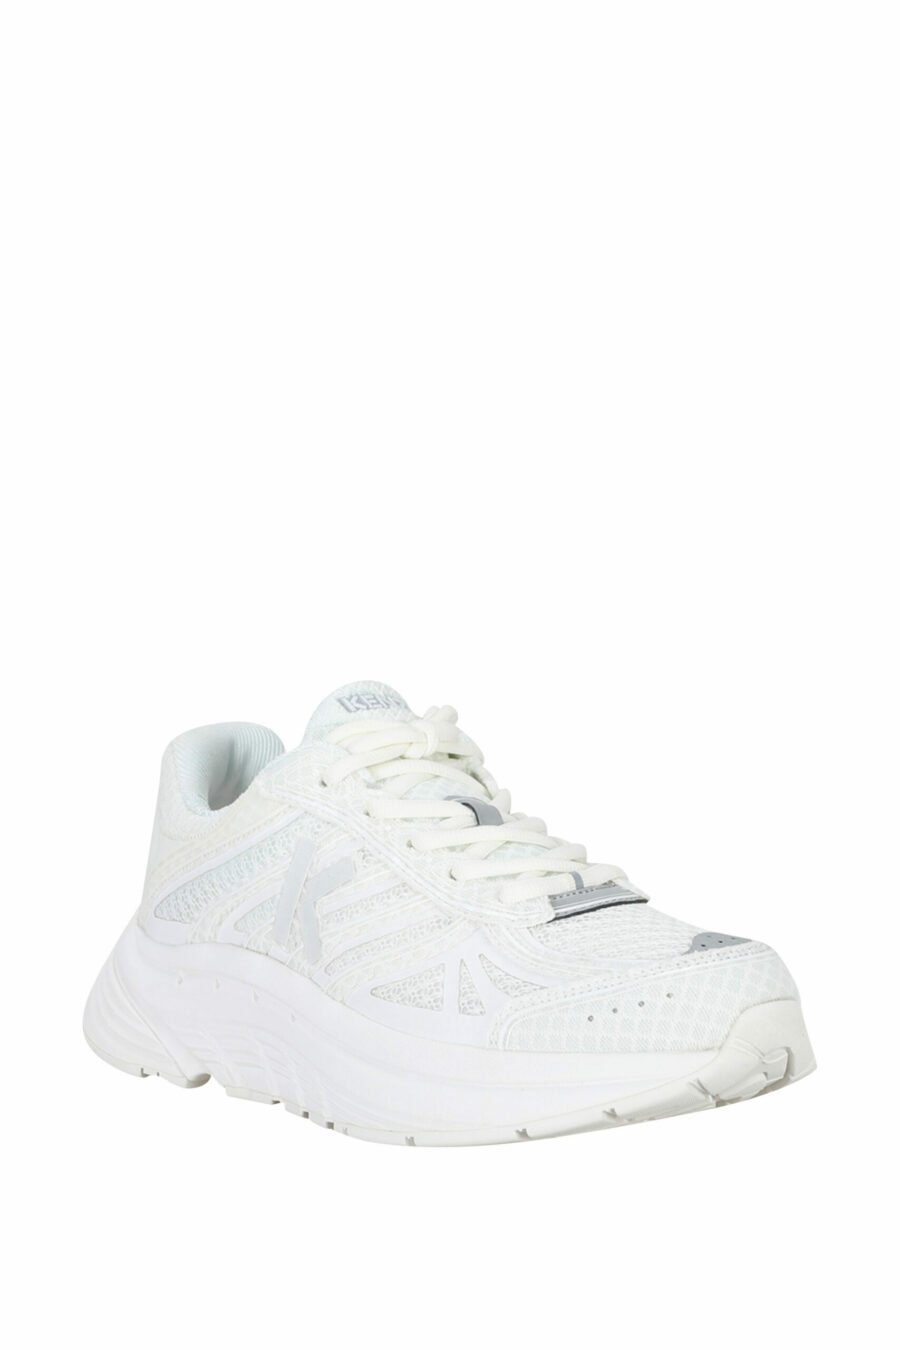 Zapatillas blancas "kenzo tech runner" con minilogo blanco - 3612230549739 1 scaled